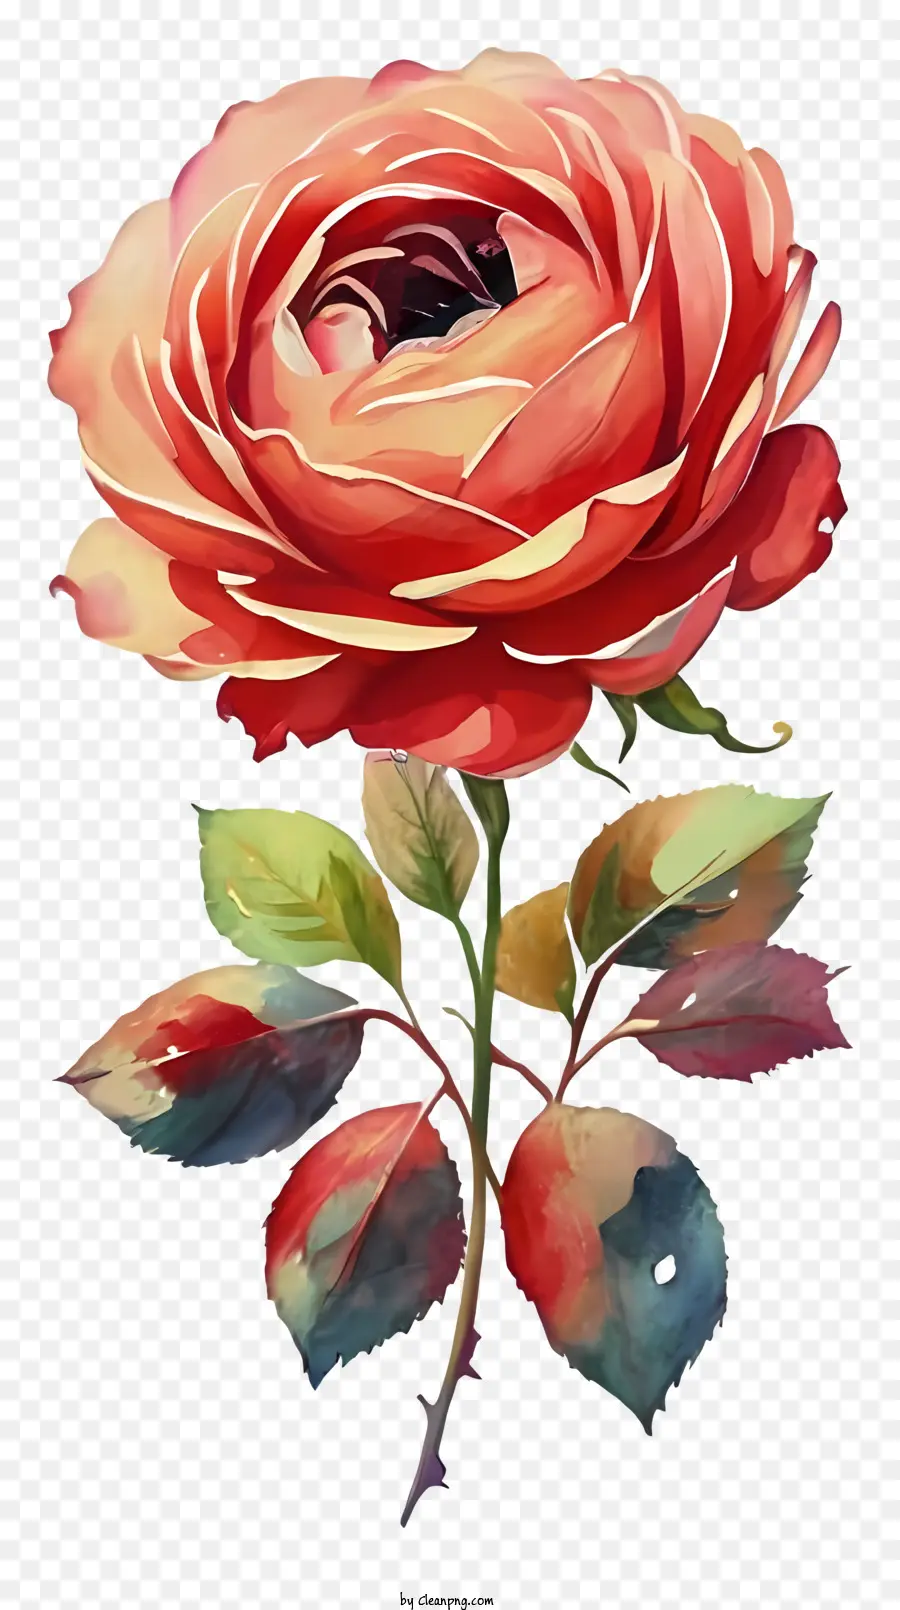 rosa - Pittura ad acquerello di una rosa dettagliata e vibrante